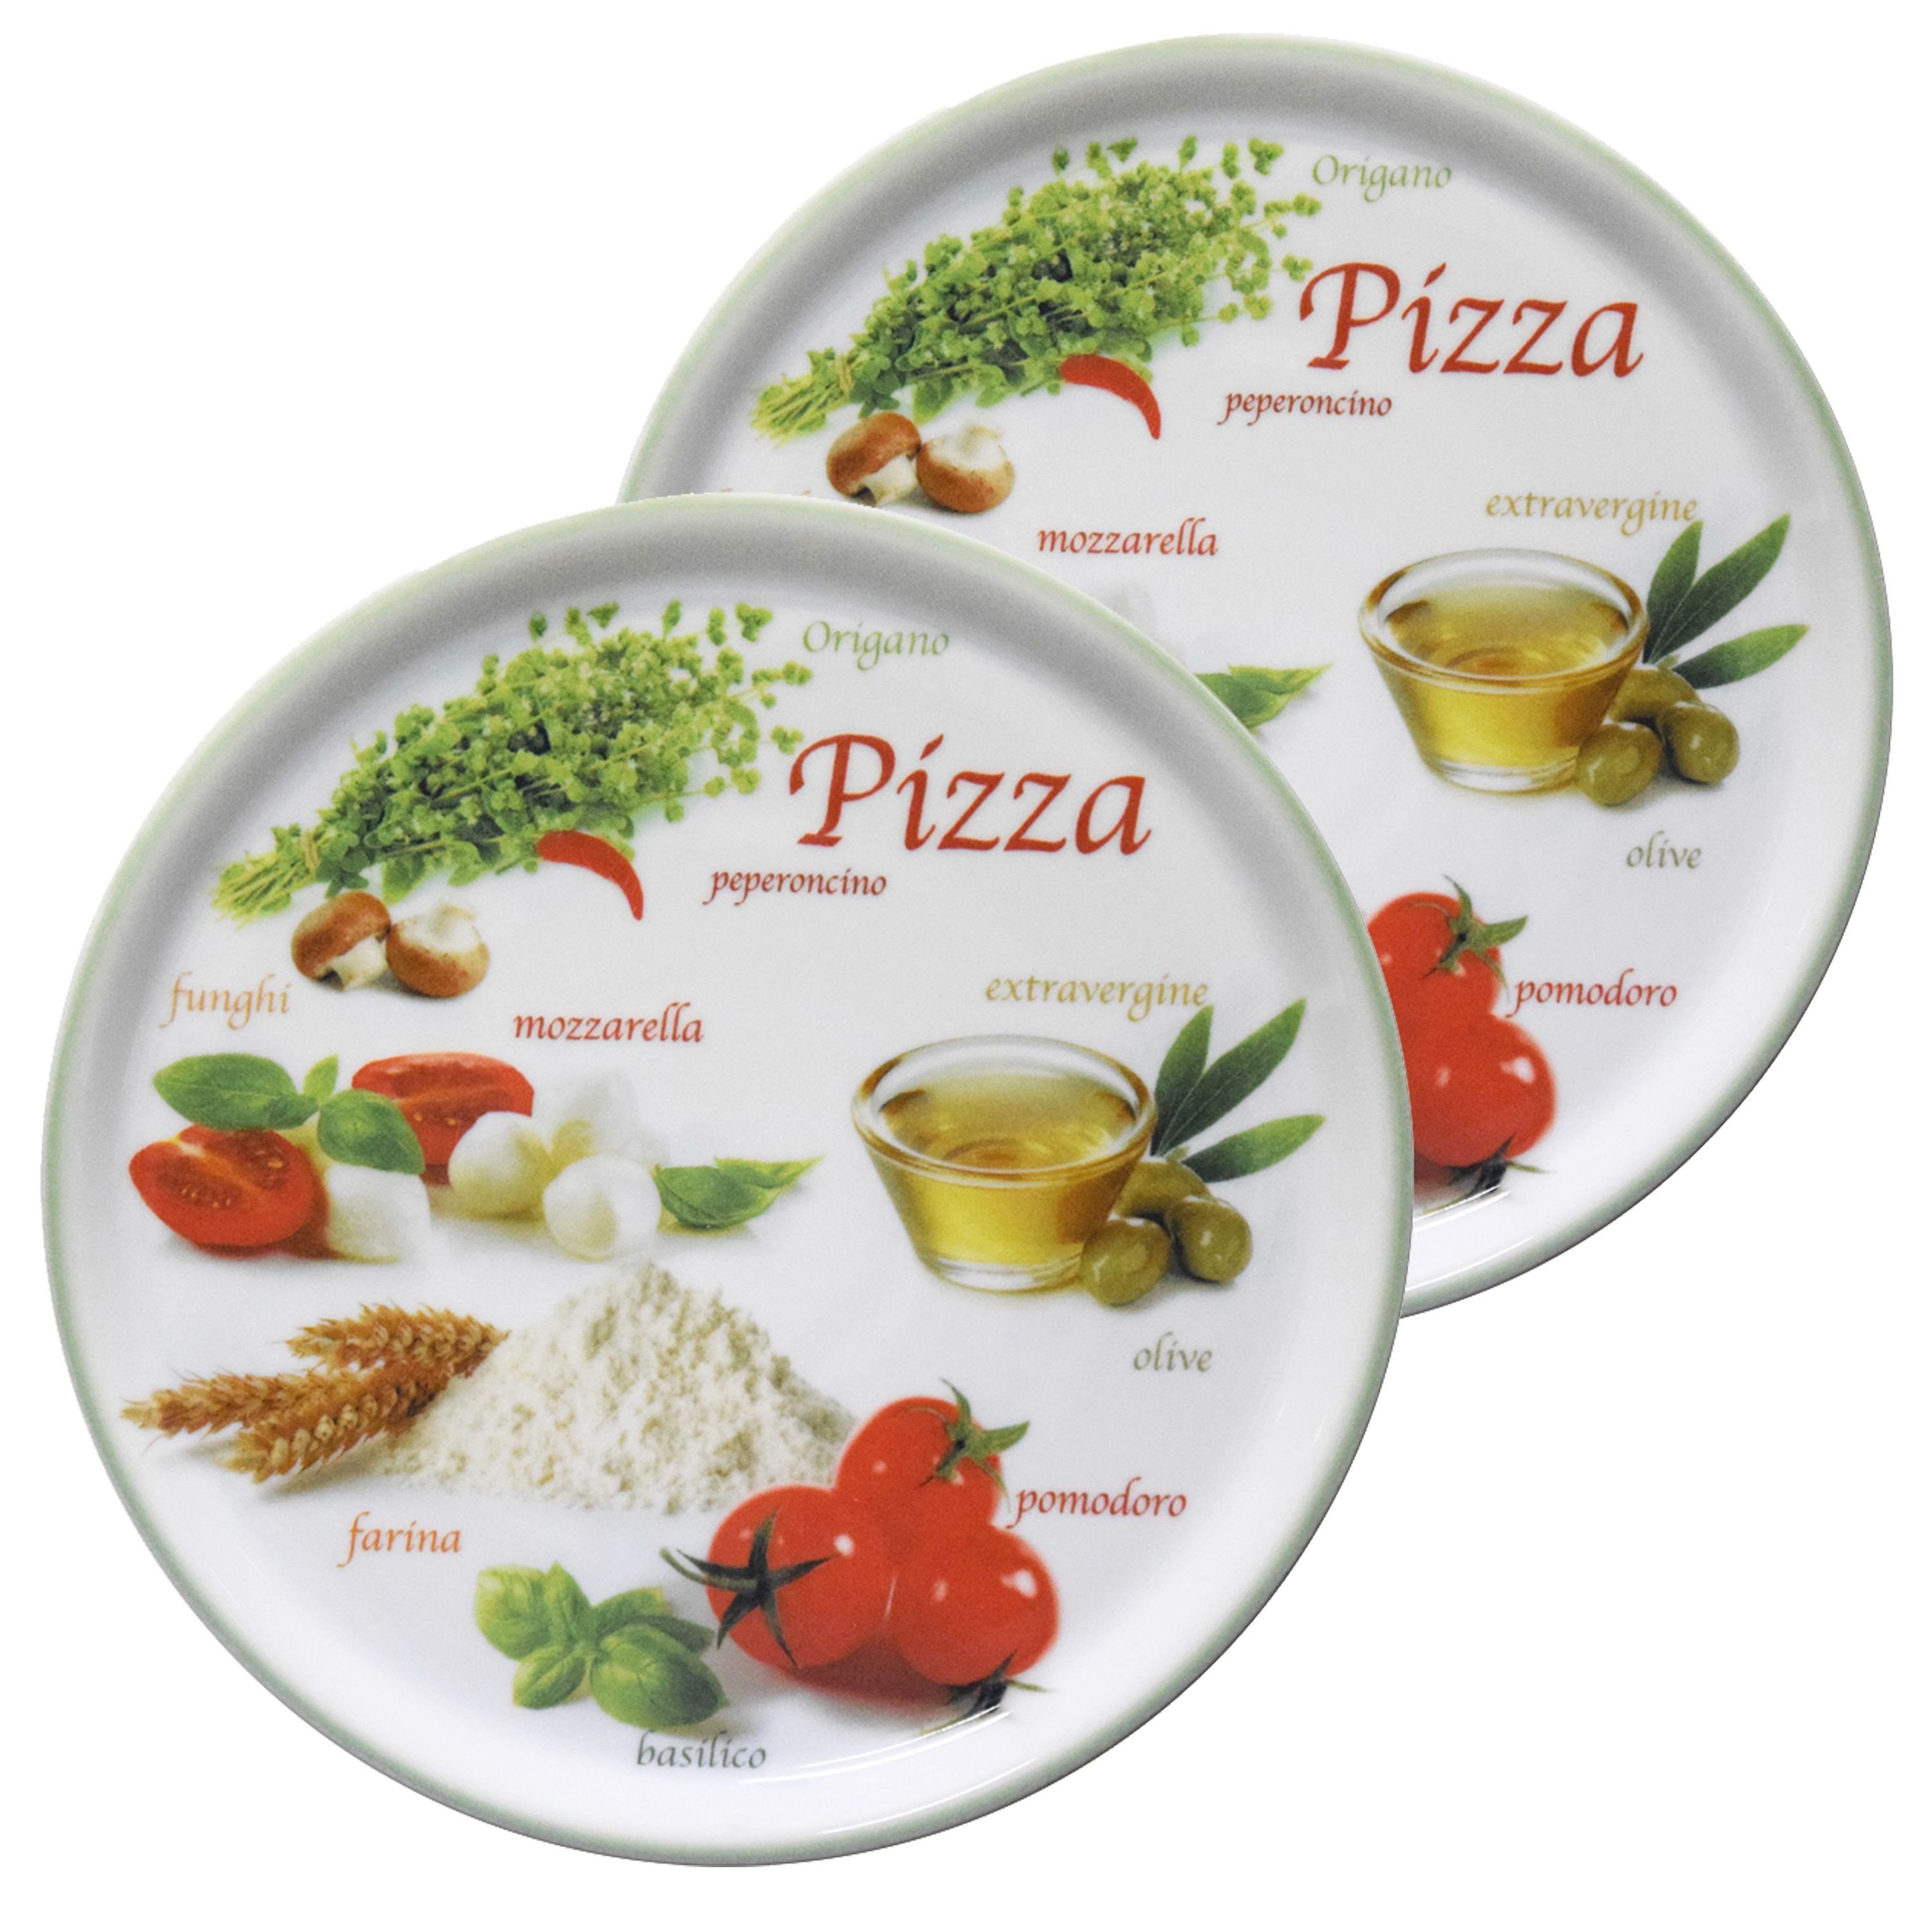 Napoli grün Pizzateller Set - Pizzateller 2er 04018#ZP1 MamboCat 33cm Pizzafoods